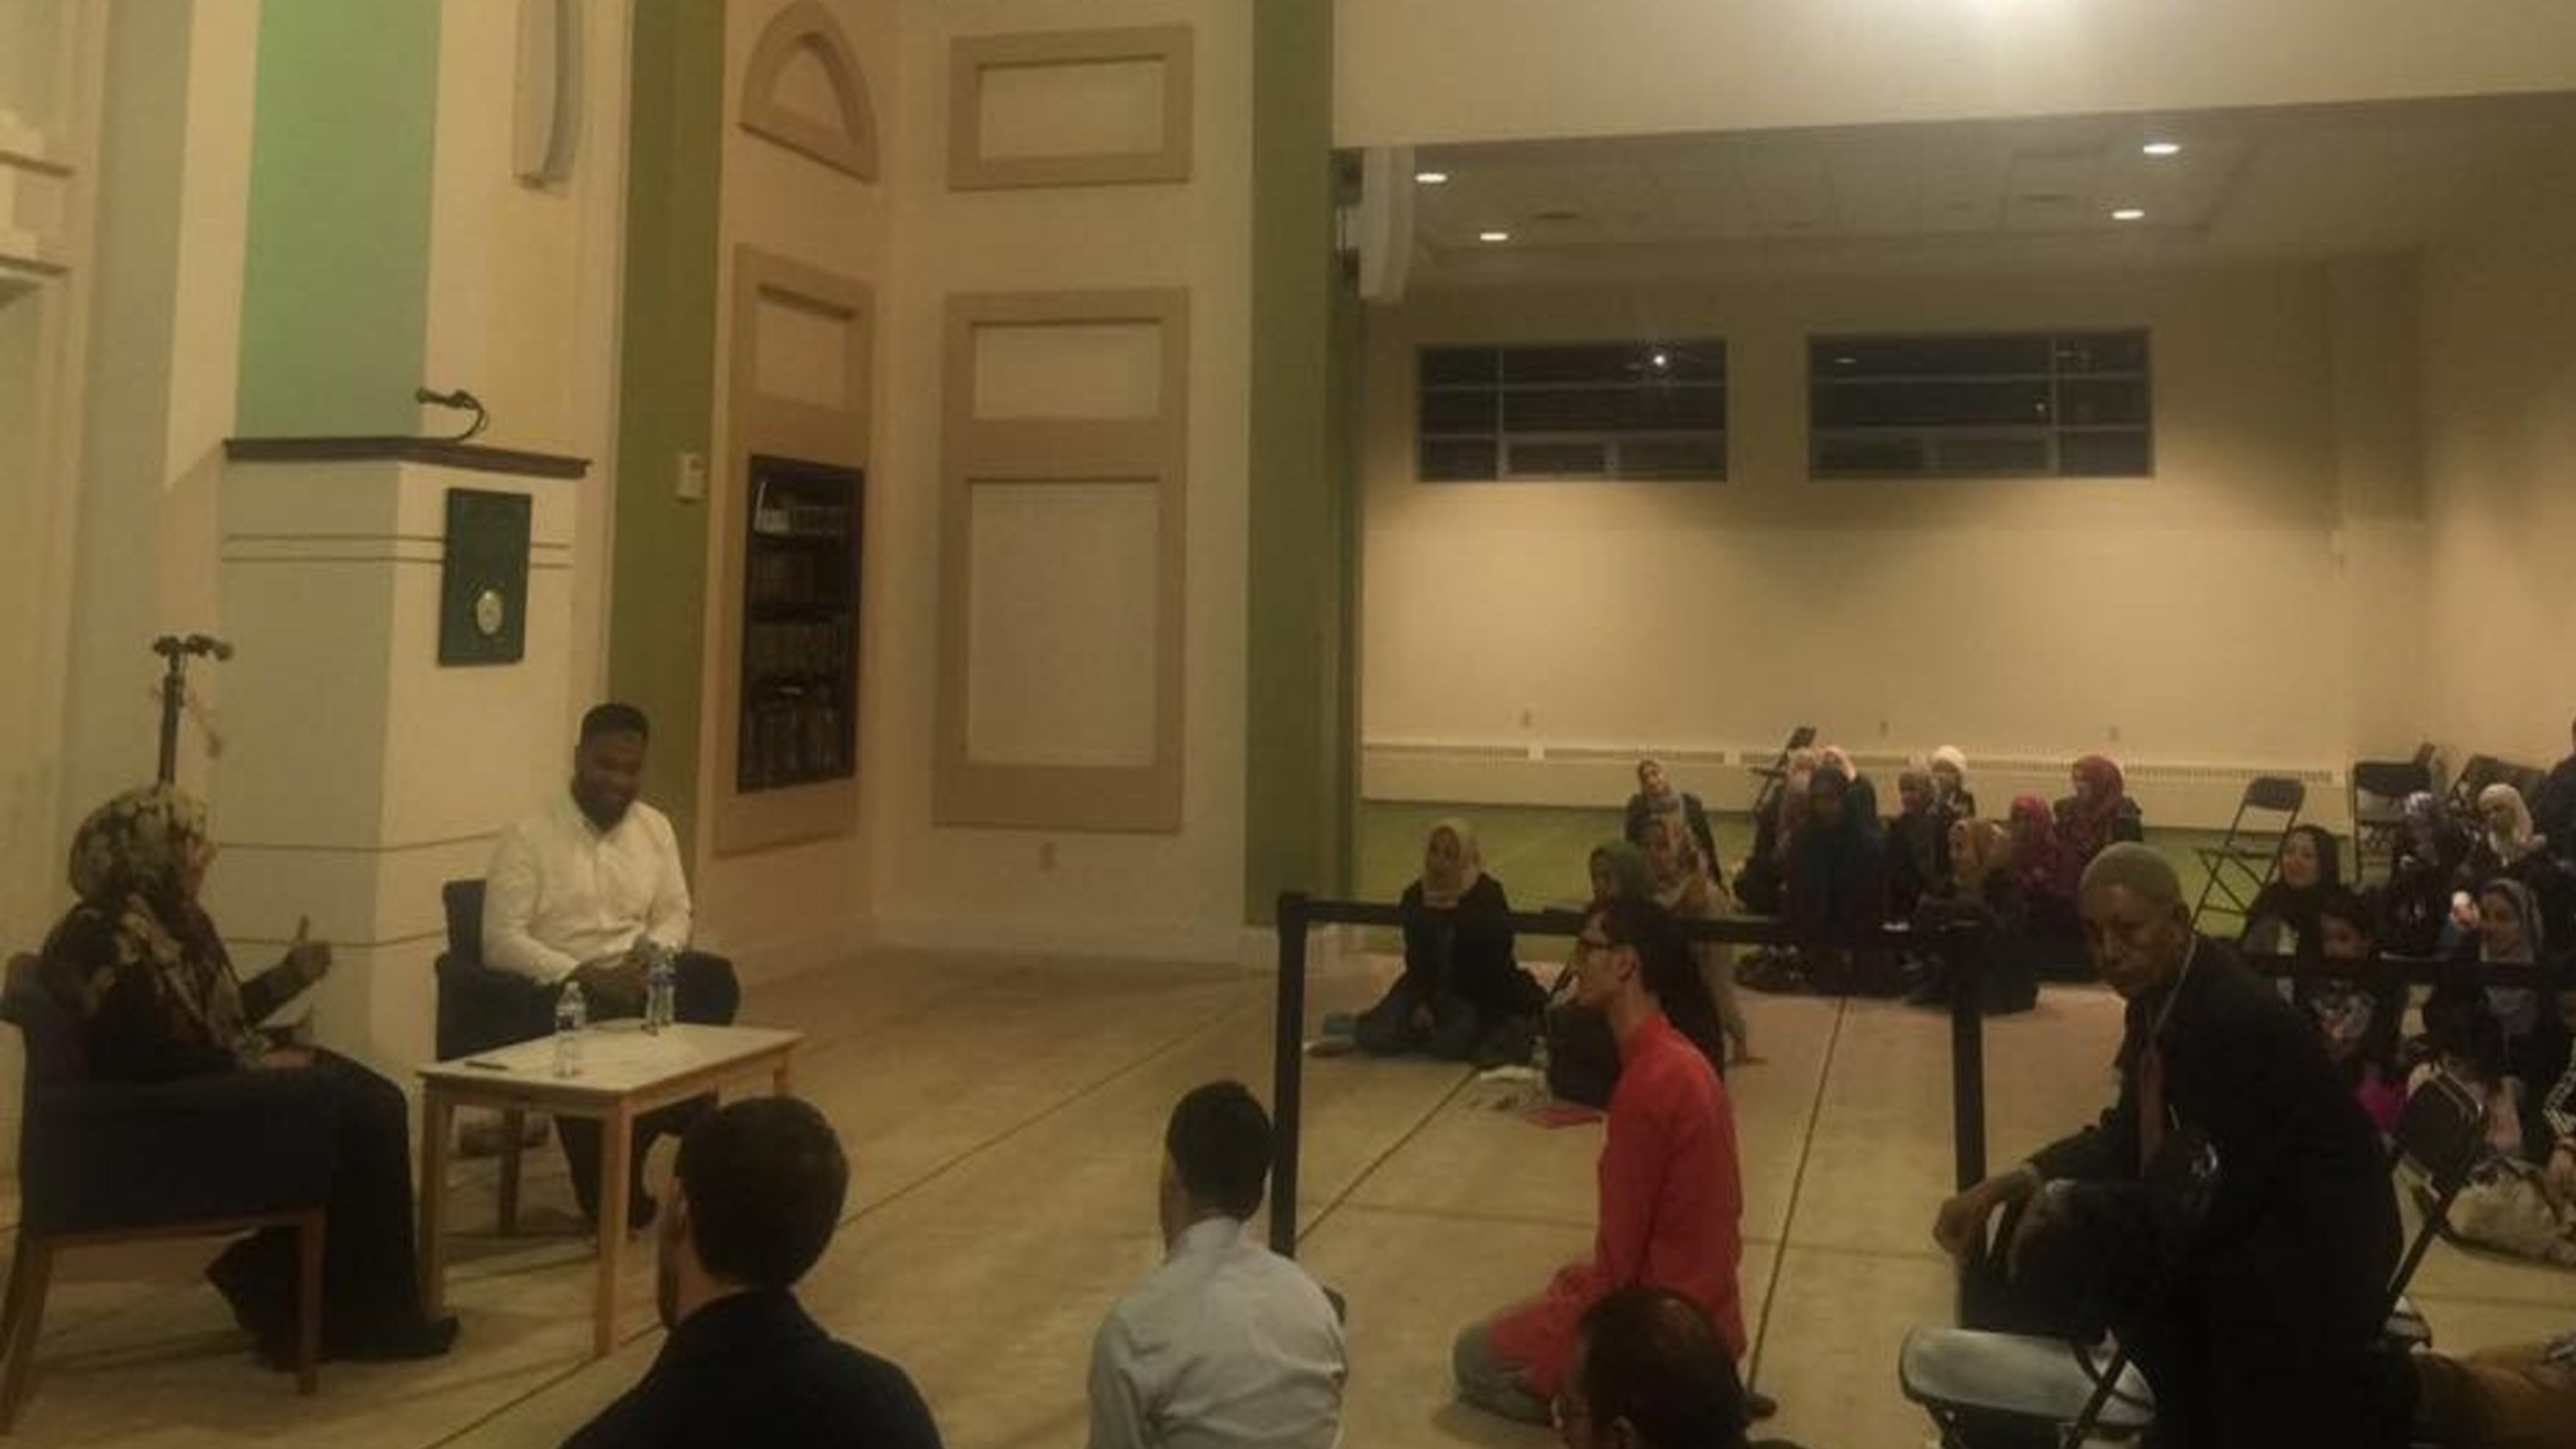 محاضرة الناشطة الحائزة على جائزة نوبل للسلام توكل كرمان في جامع المركز الاسلامي بعنوان: التحديات التي تواجه المسلمين في الغرب - بوسطن/اميركا 